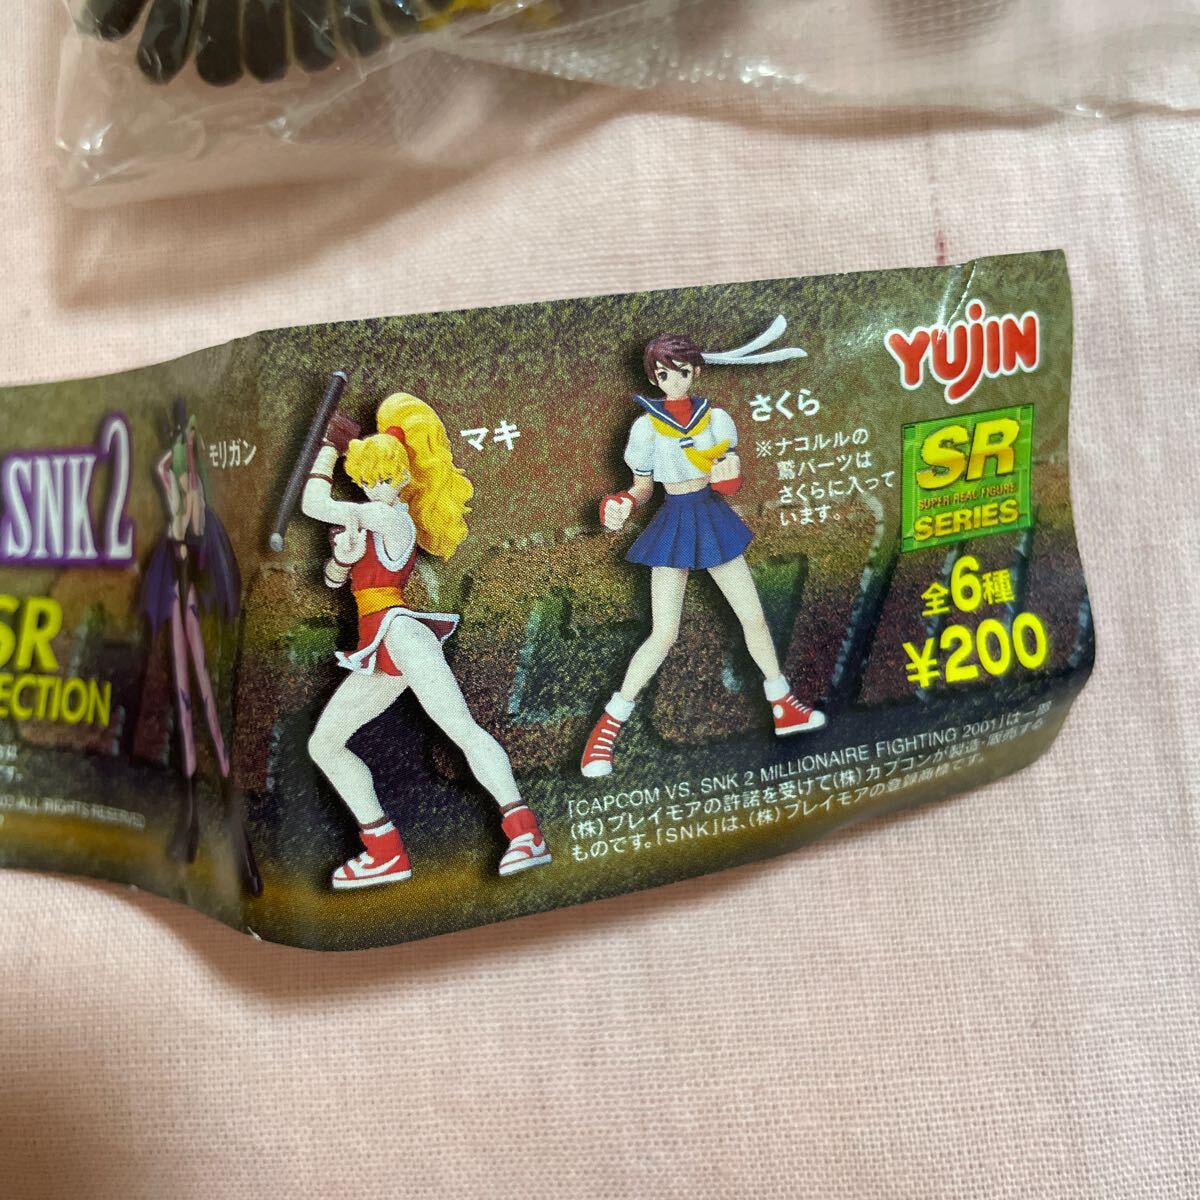  Eugene gashapon CAPCOM VS SNK 2 Sakura источник ..maki прекрасный девушка фигурка игра Street Fighter нераспечатанный 